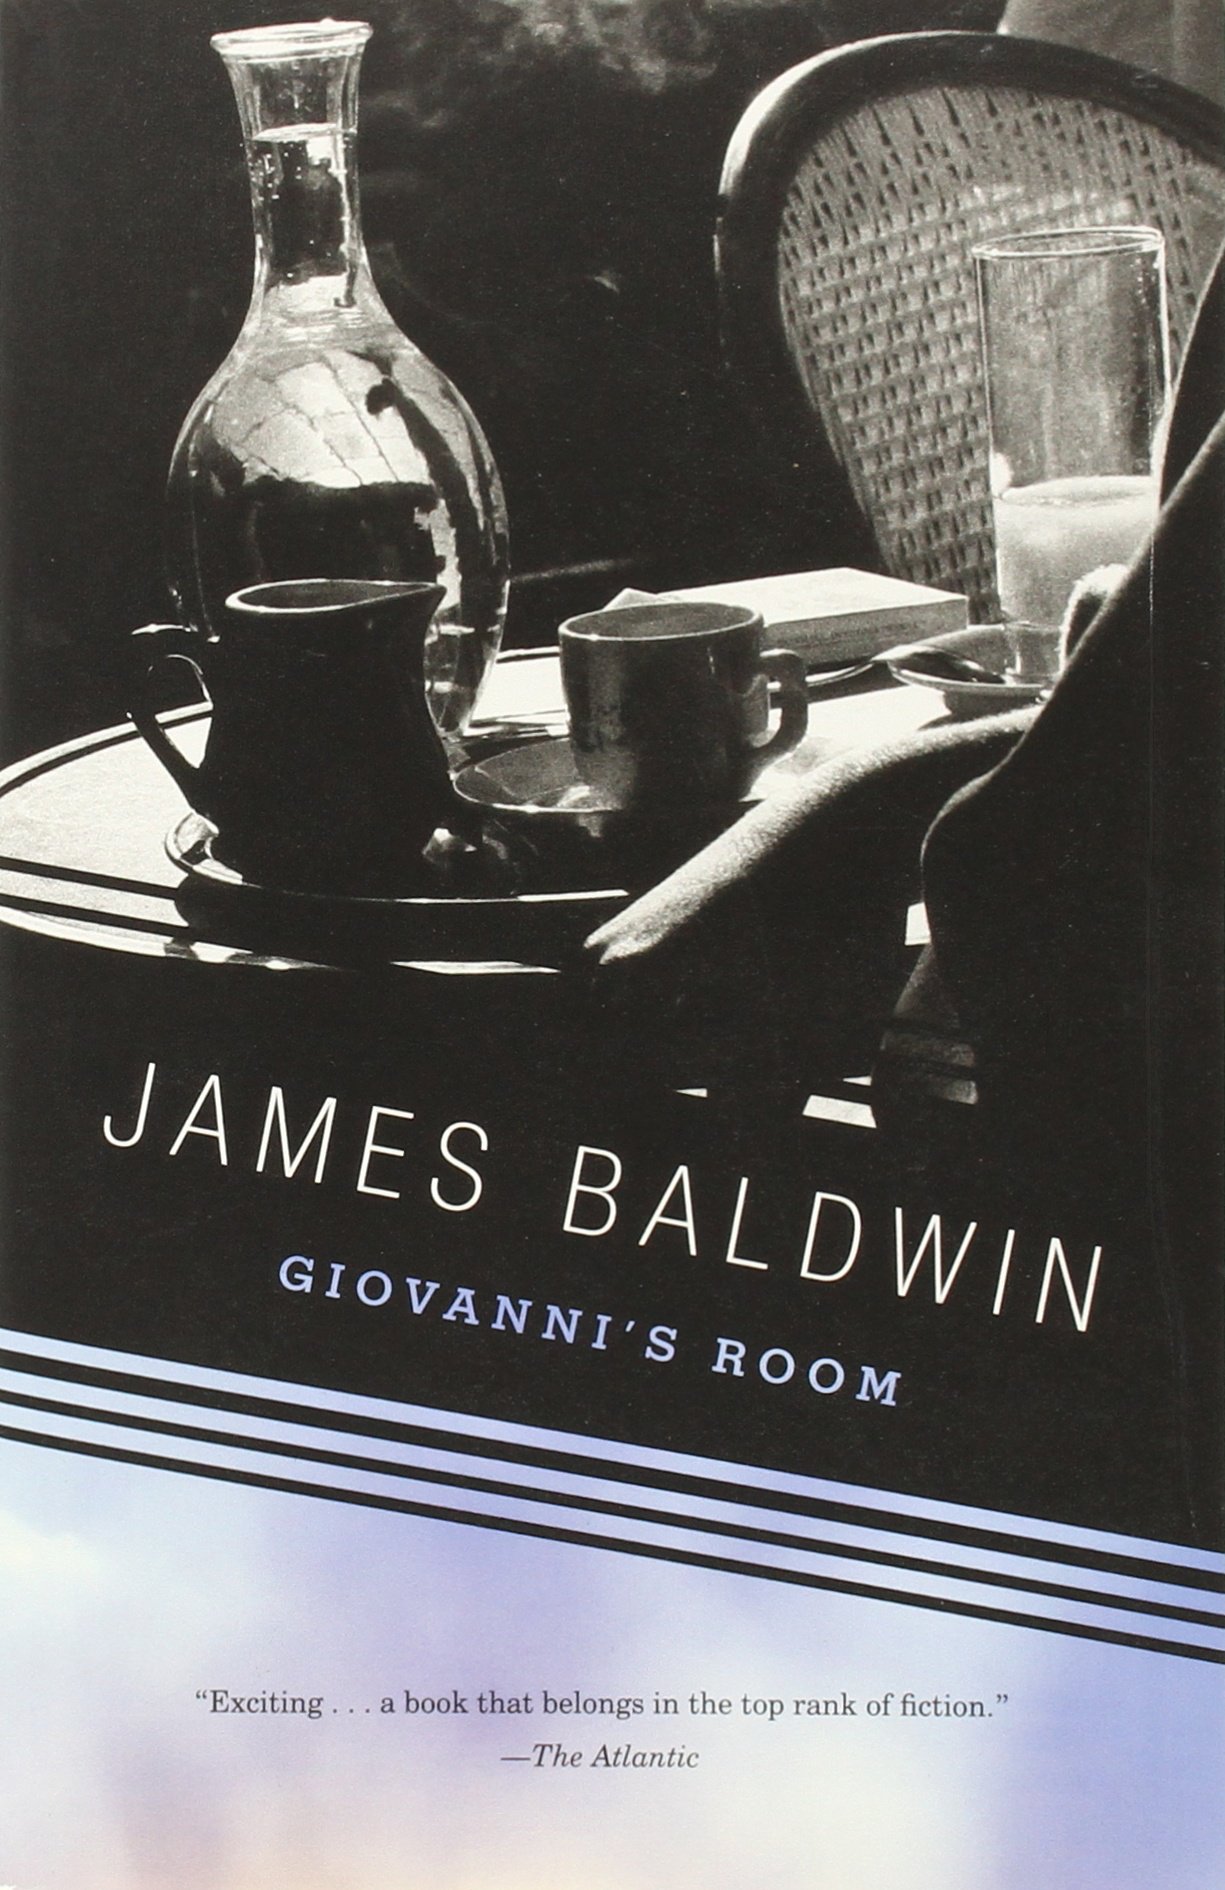 View description for 'Giovanni's Room'